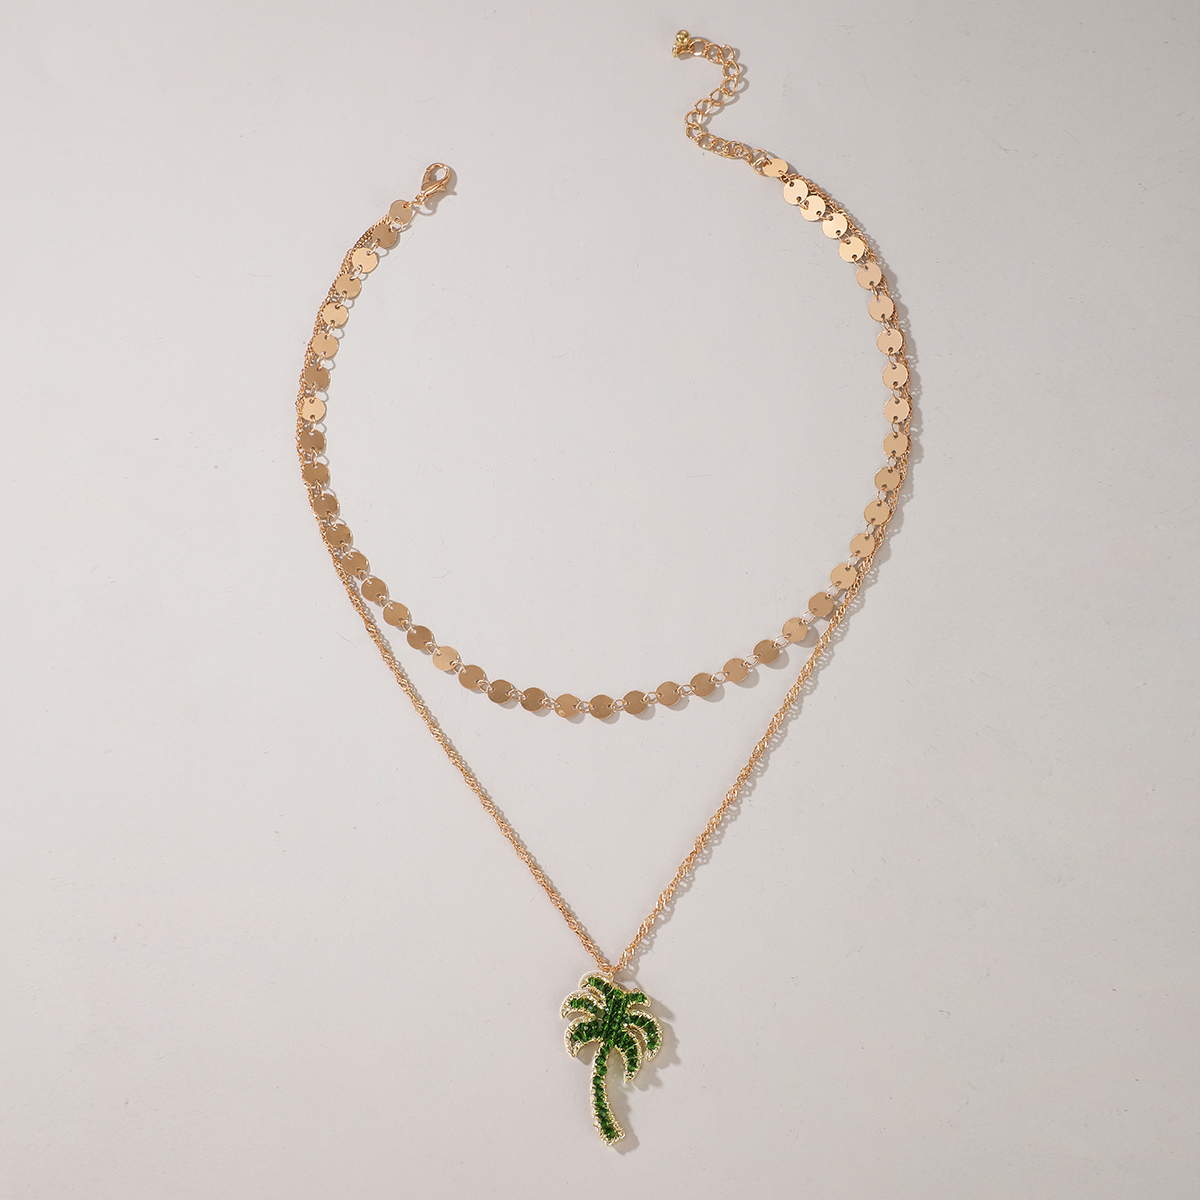 Mode Disc Quaste Kokosnussbaum Anhnger mehrschichtige Halskettepicture3